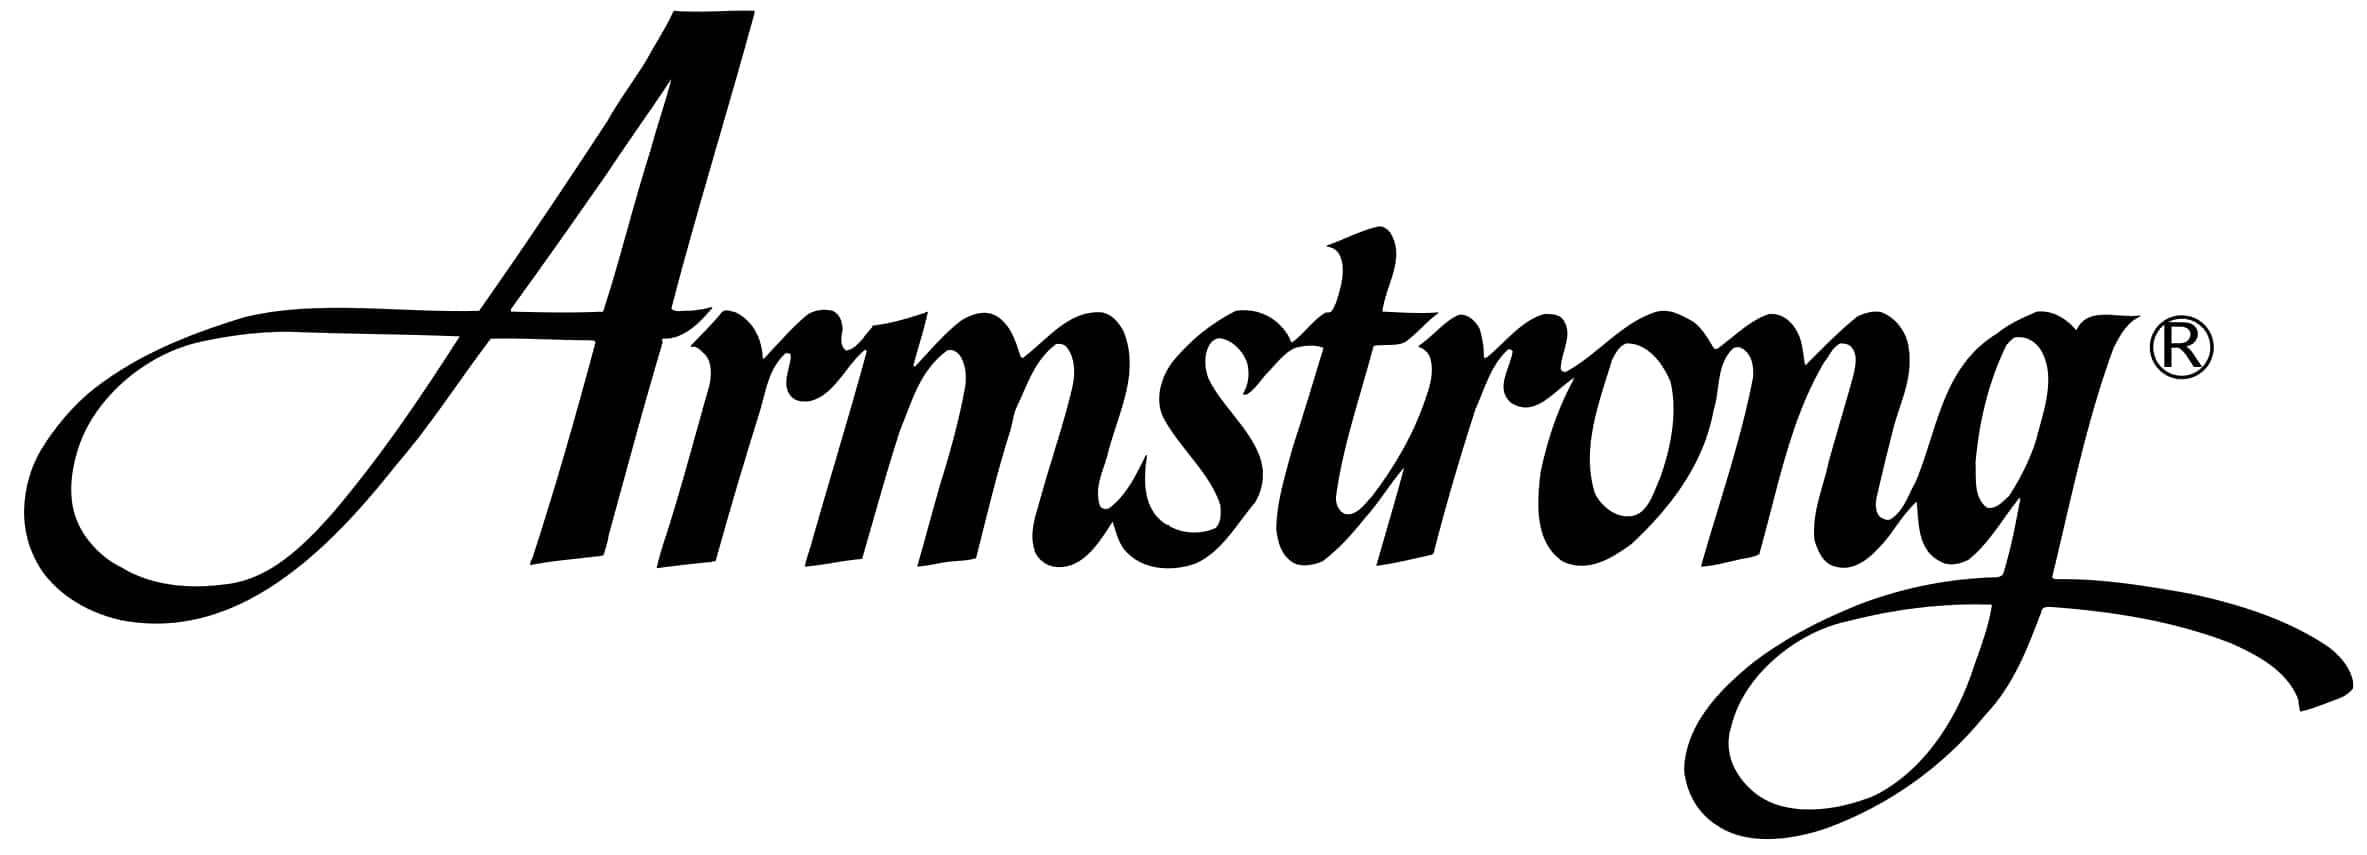 Armstrong Logo - Armstrong